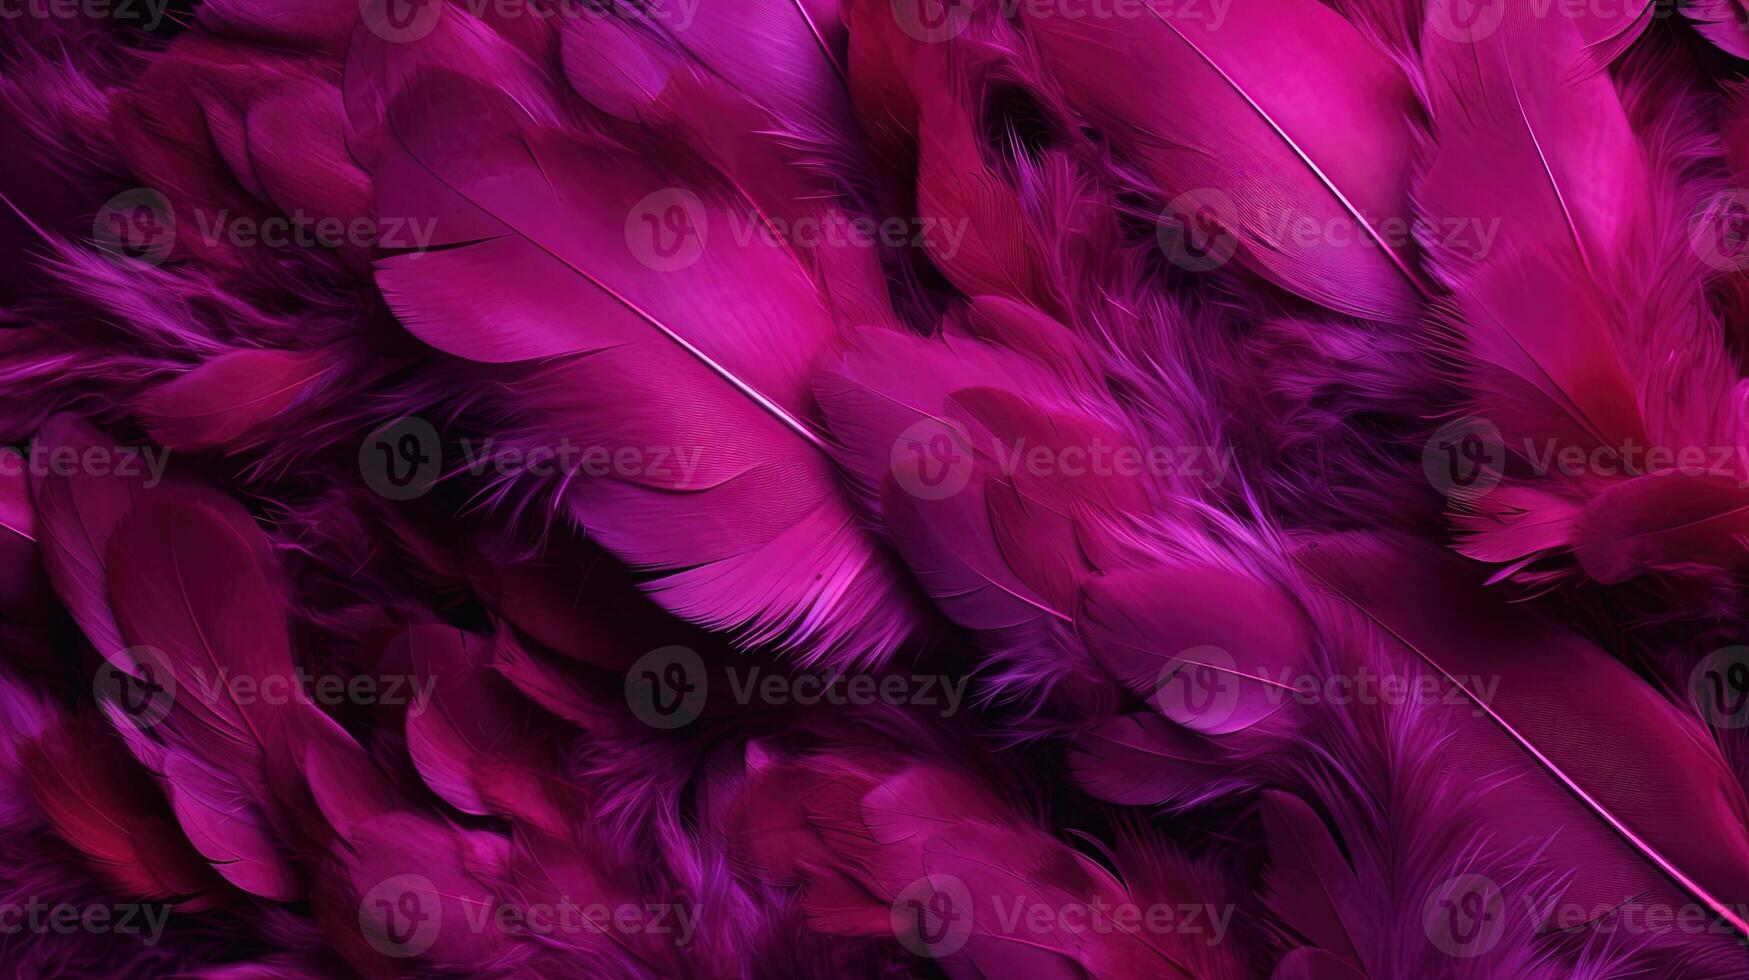 generatief ai, mooi viva magenta roze detailopname veren, fotorealistisch achtergrond. klein pluizig roze veren willekeurig verspreide vormen foto